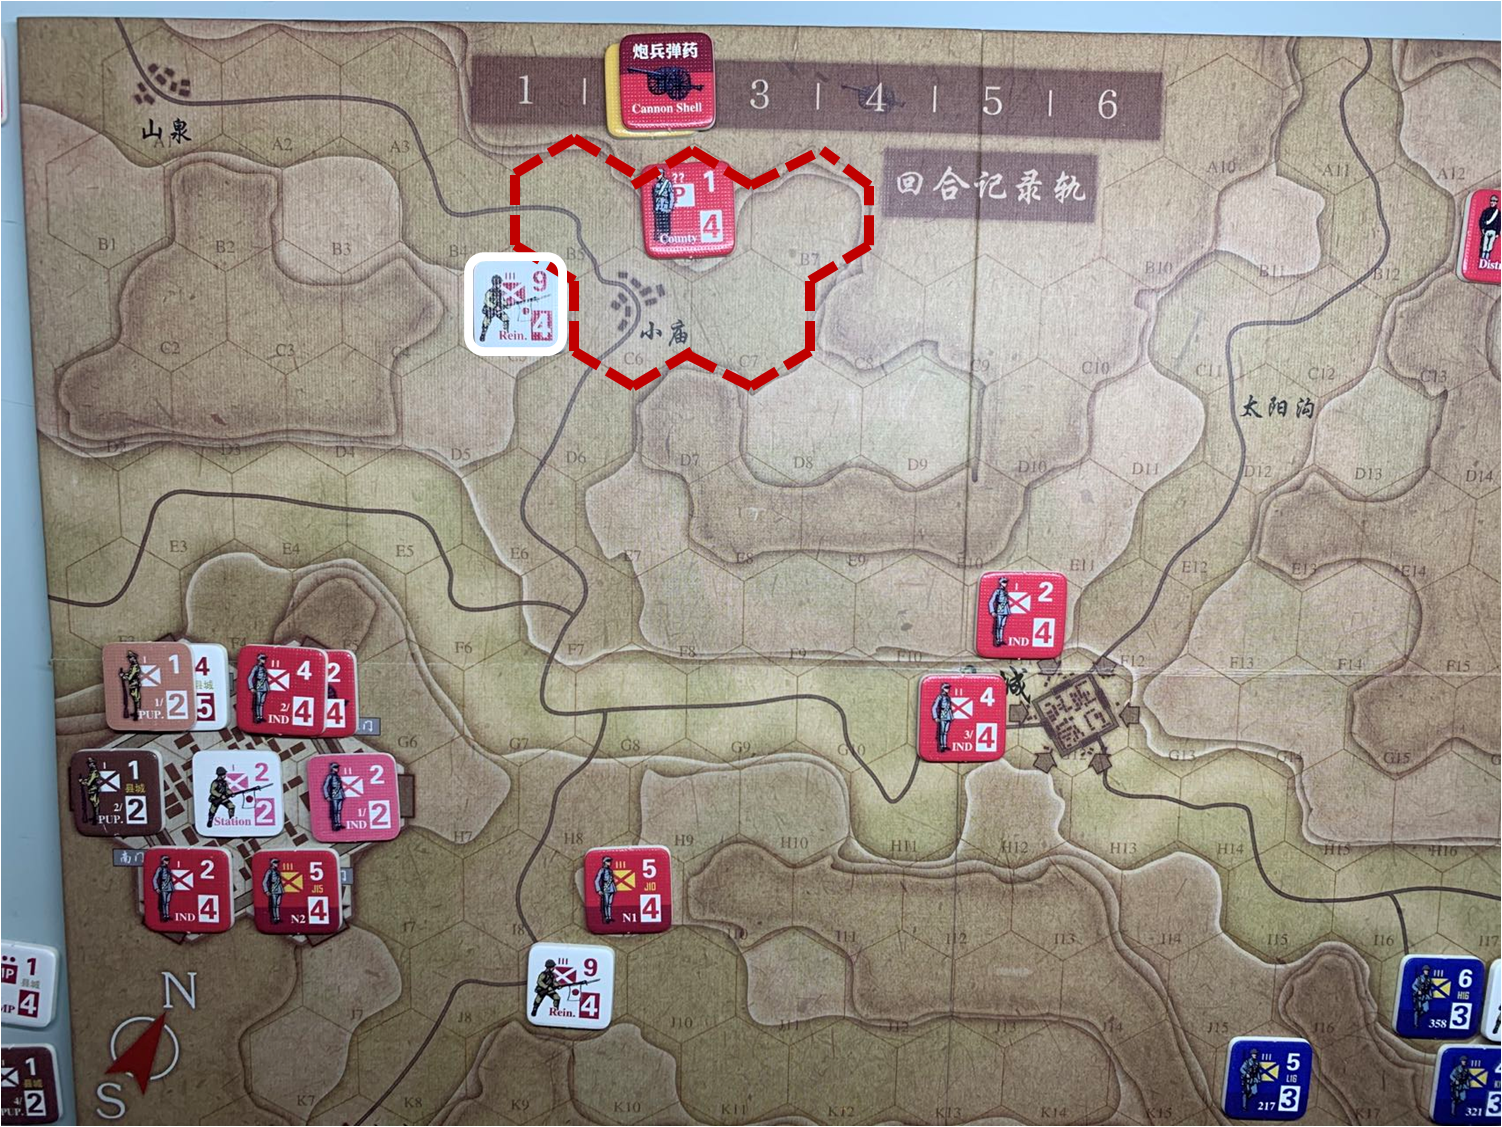 第二回合山泉方向日军增援部队（C5）对于移动命令1的执行结果